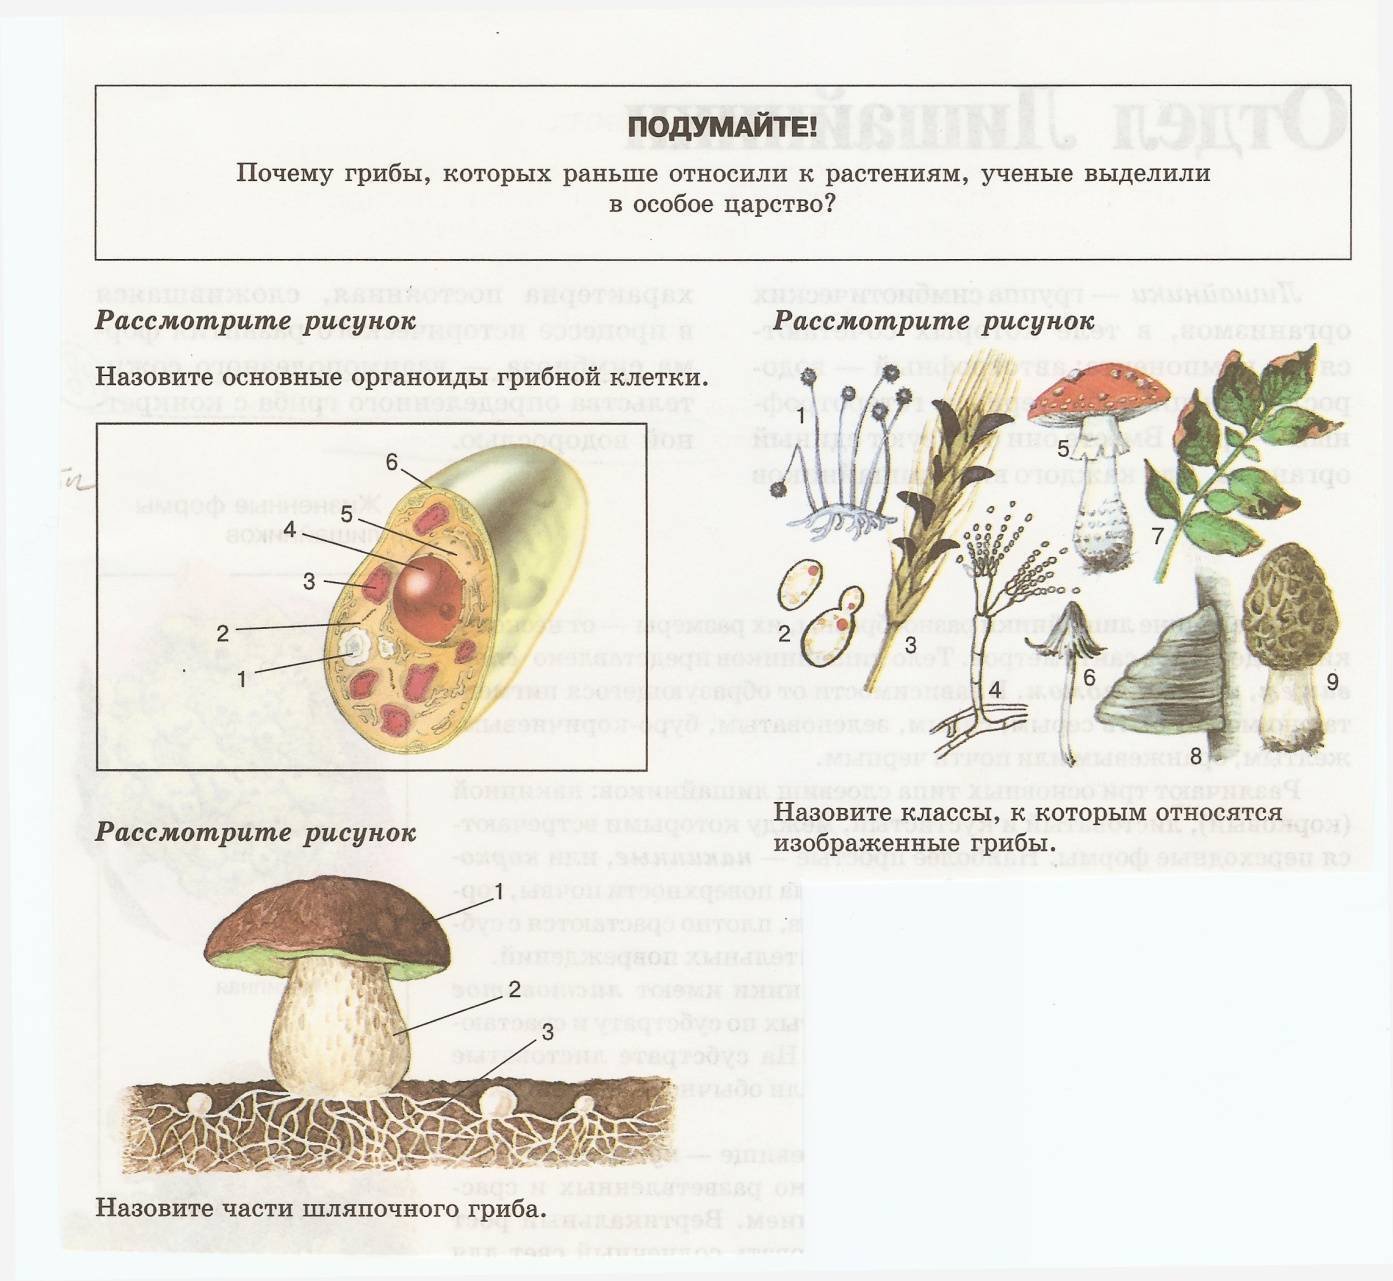 Верны ли суждения о строении грибной клетки